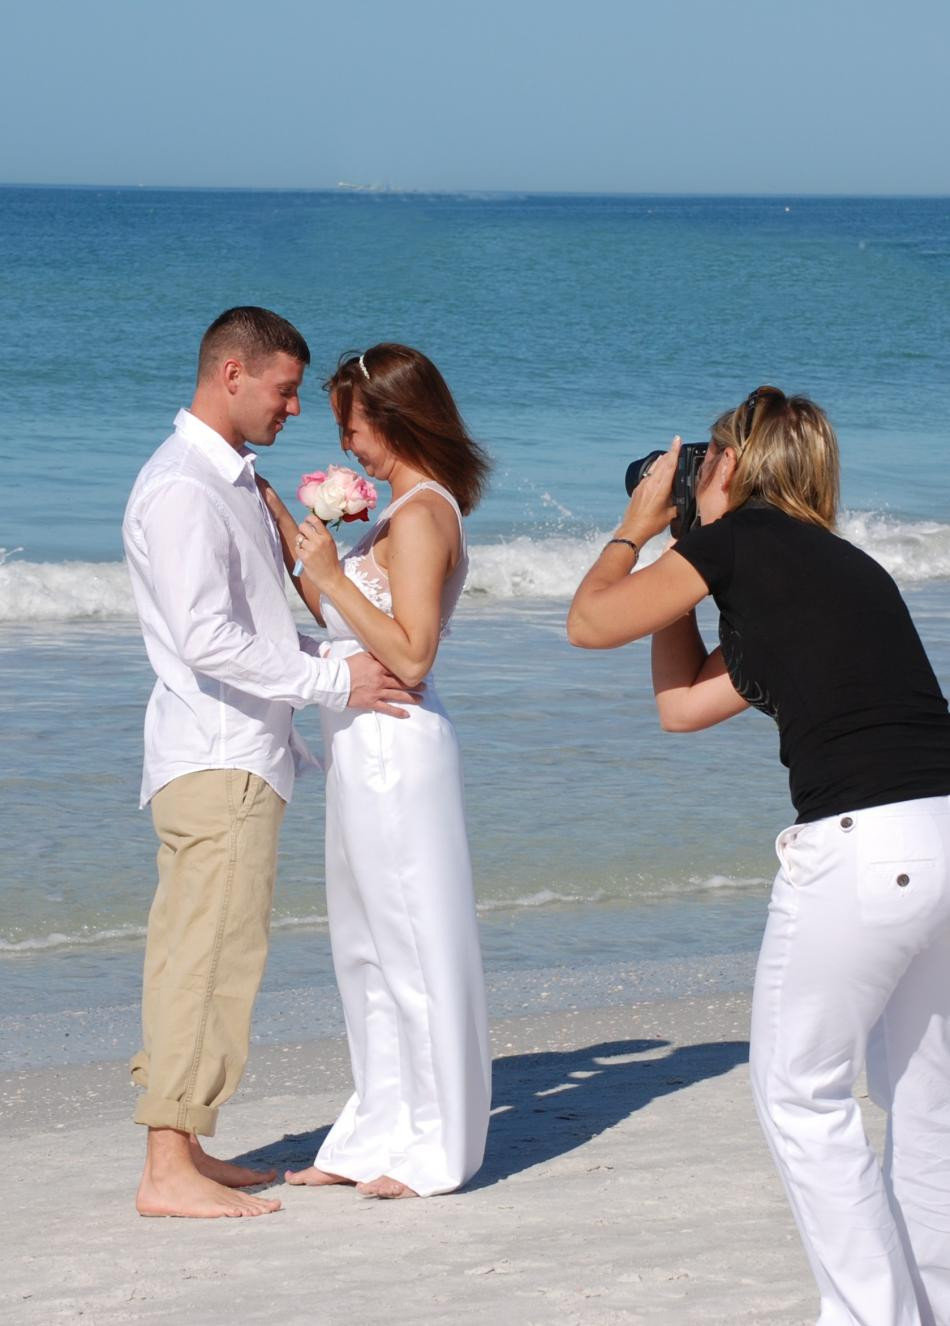 Beach Wedding Photo Ideas
 Top Ten Tips for Planning Your Florida Wedding